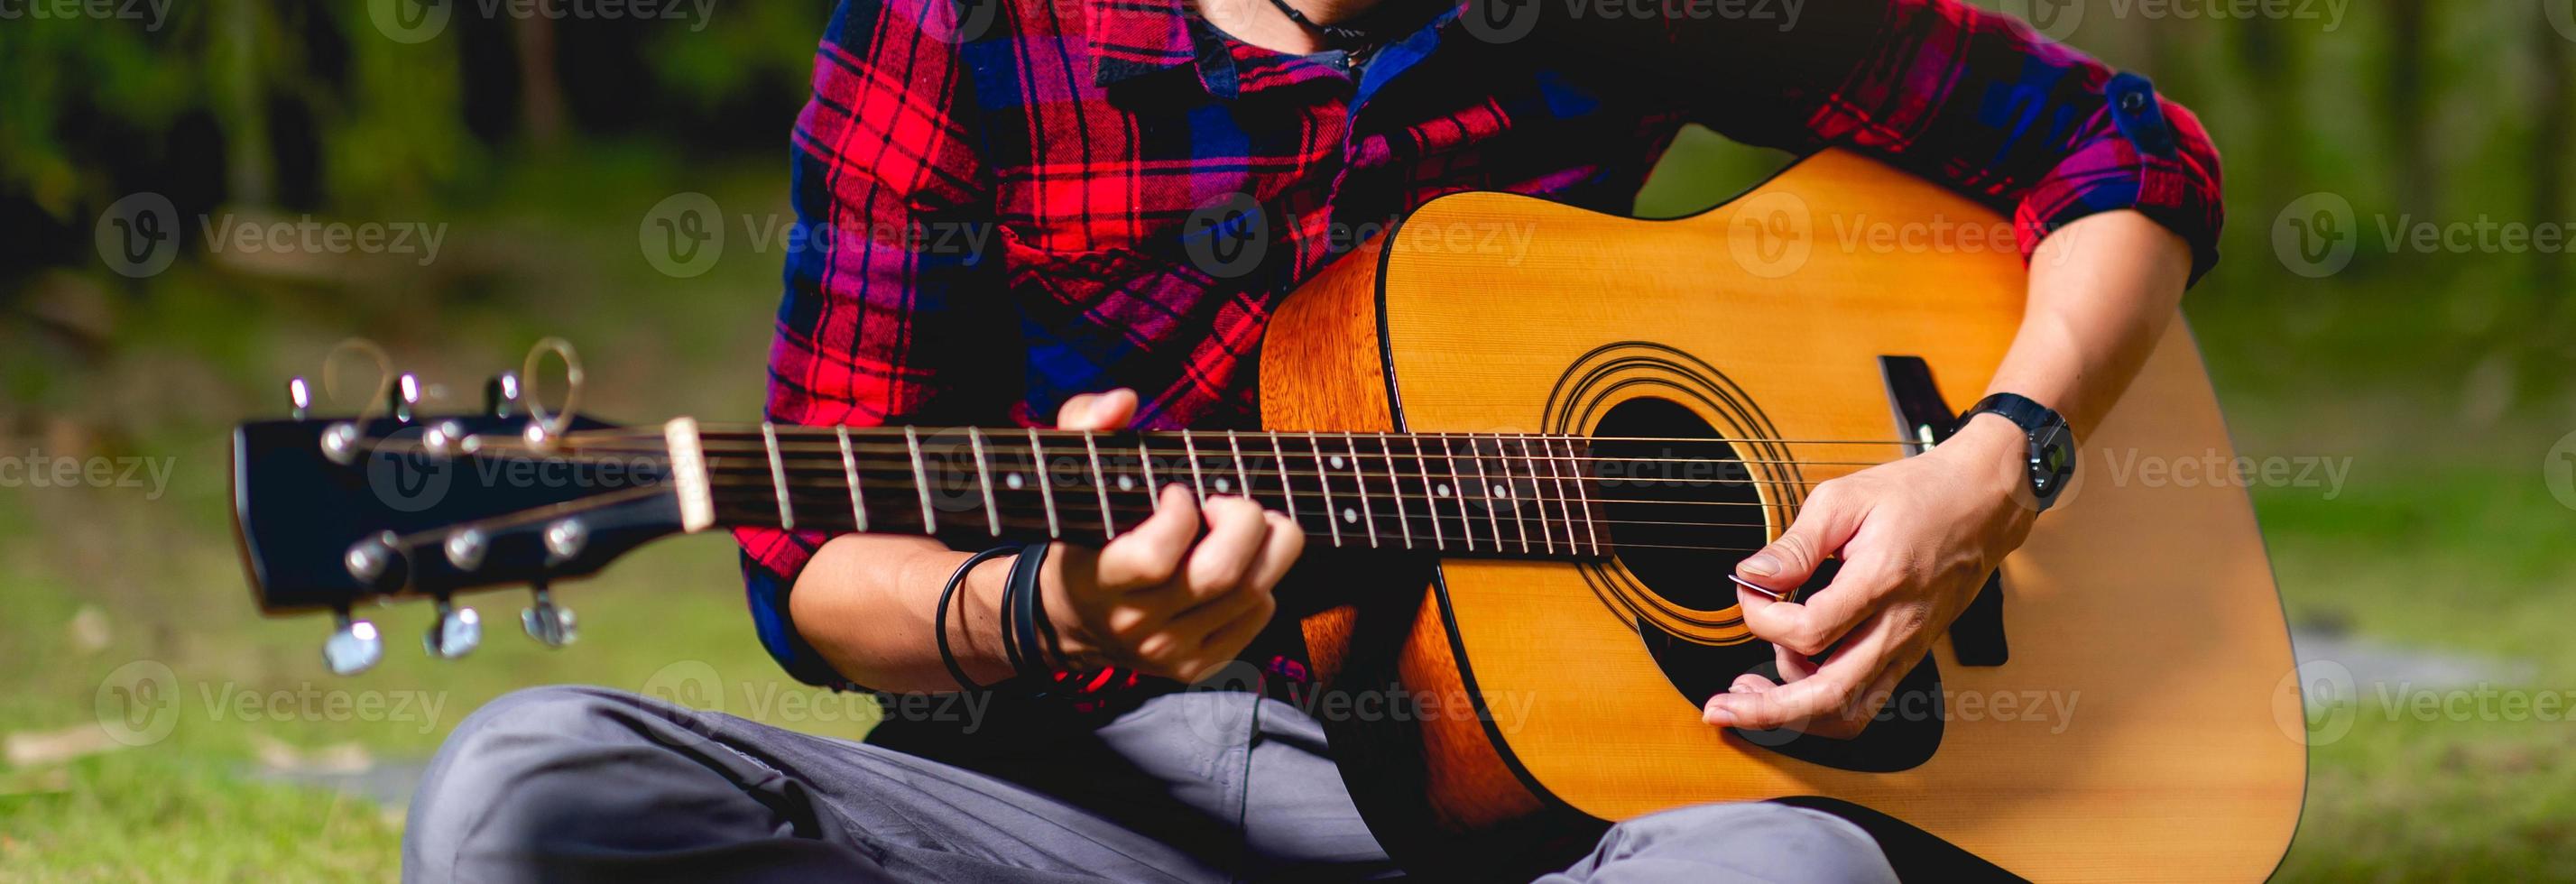 personne qui joue de la guitare à l'extérieur photo